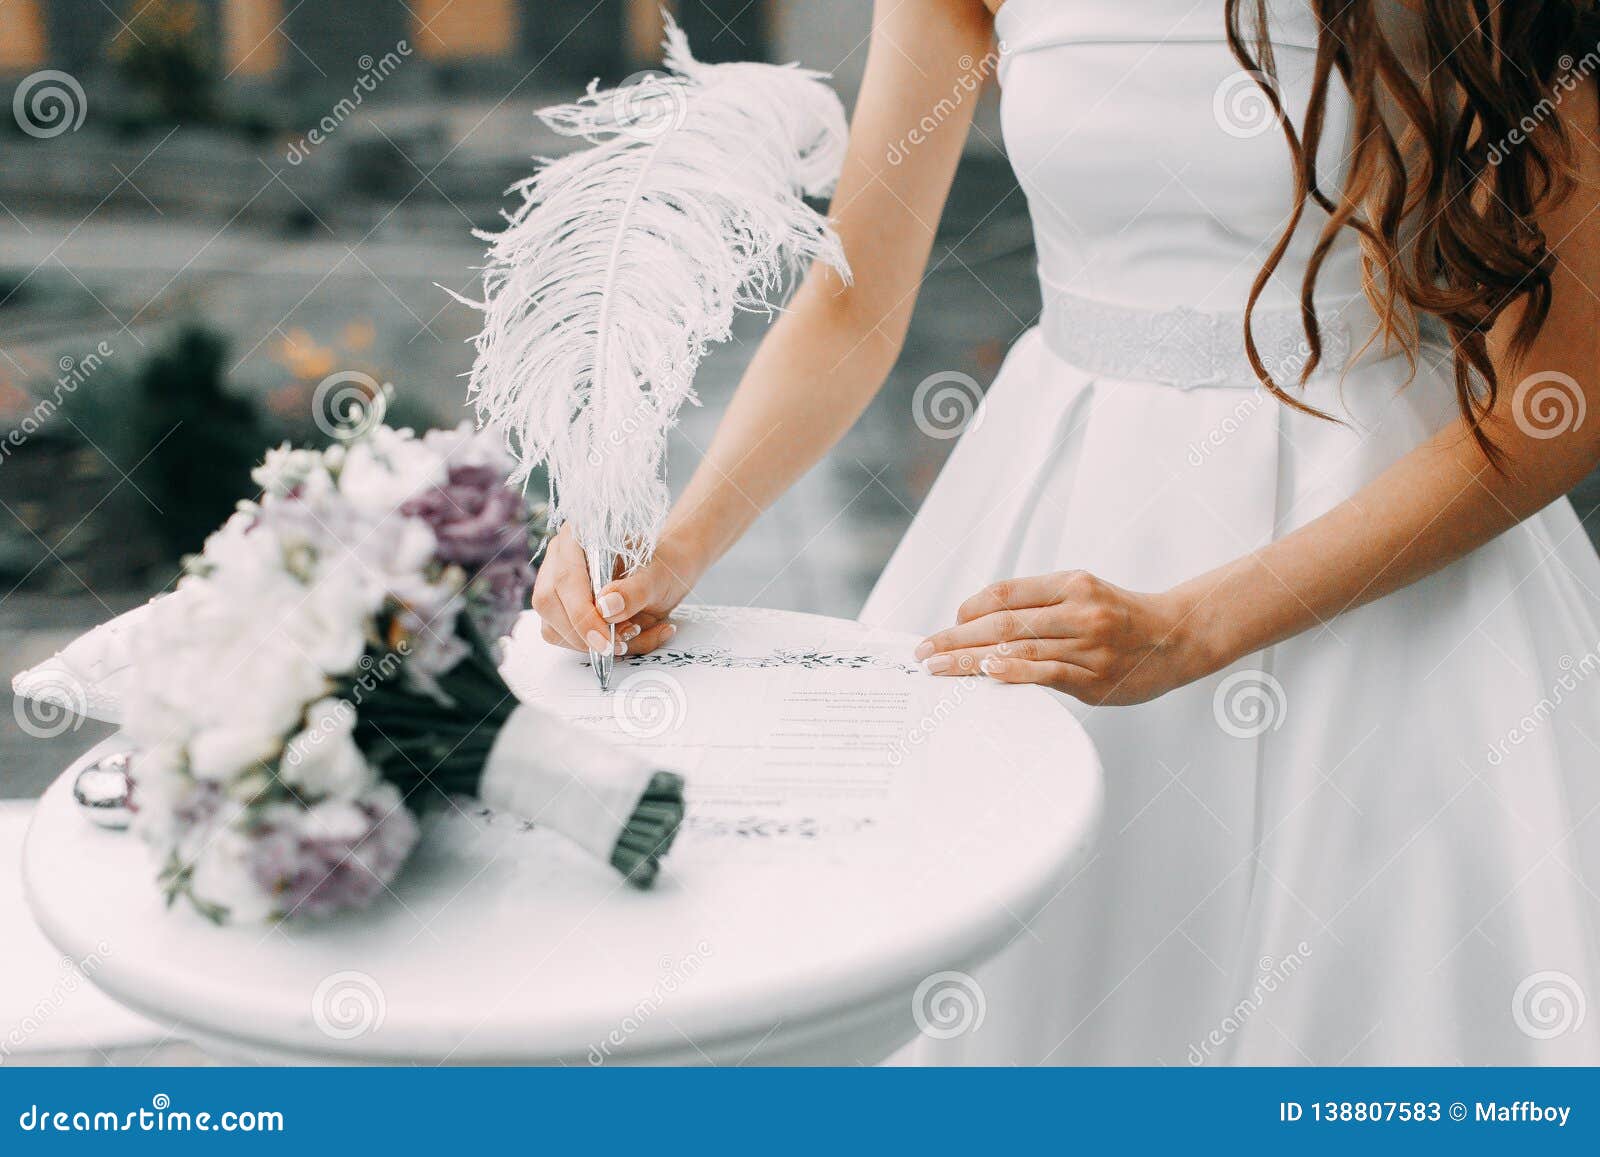 bride signs